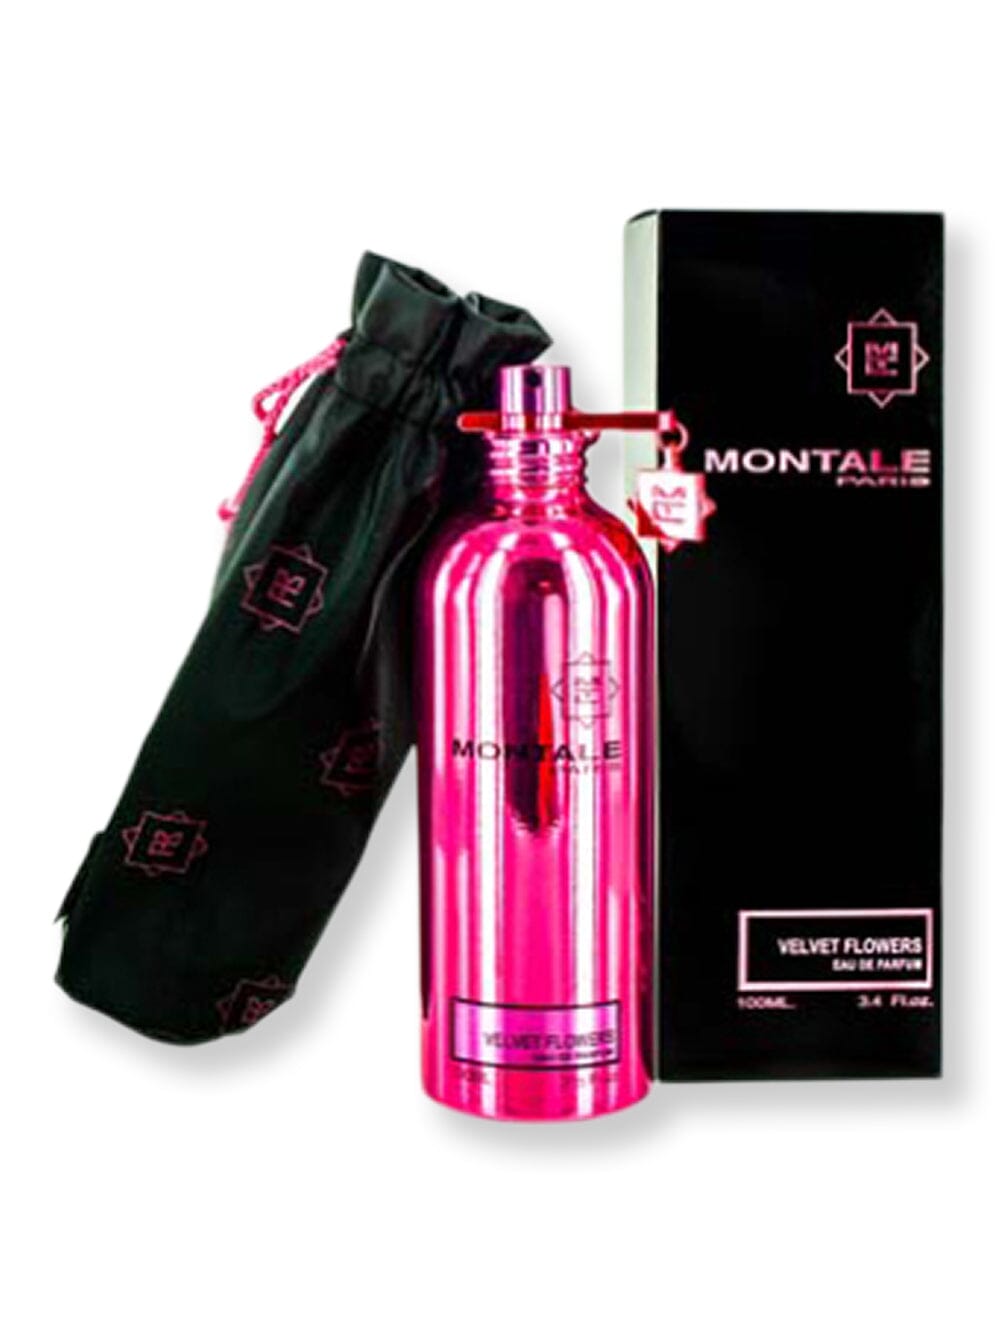 Montale Montale Velvet Flowers EDP Spray 3.3 oz100 ml Perfume 